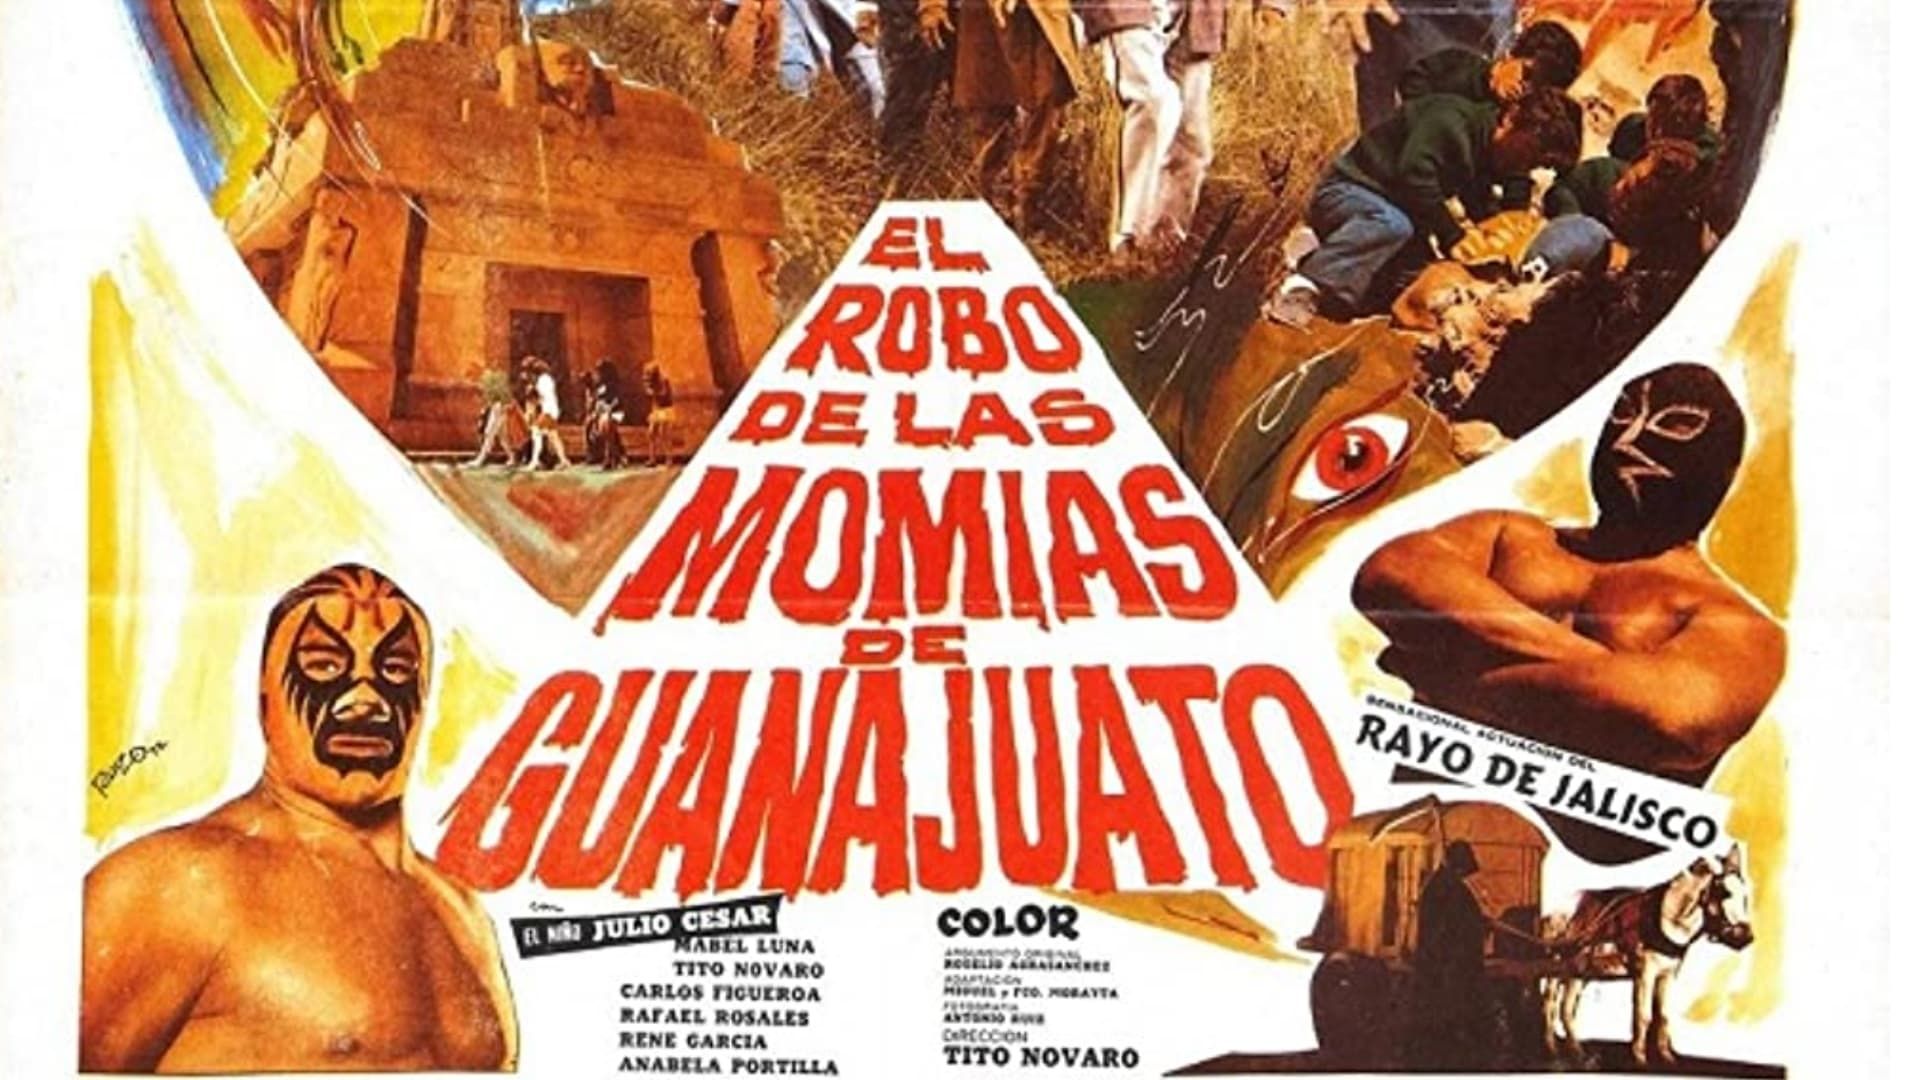 Cubierta de El robo de las momias de Guanajuato